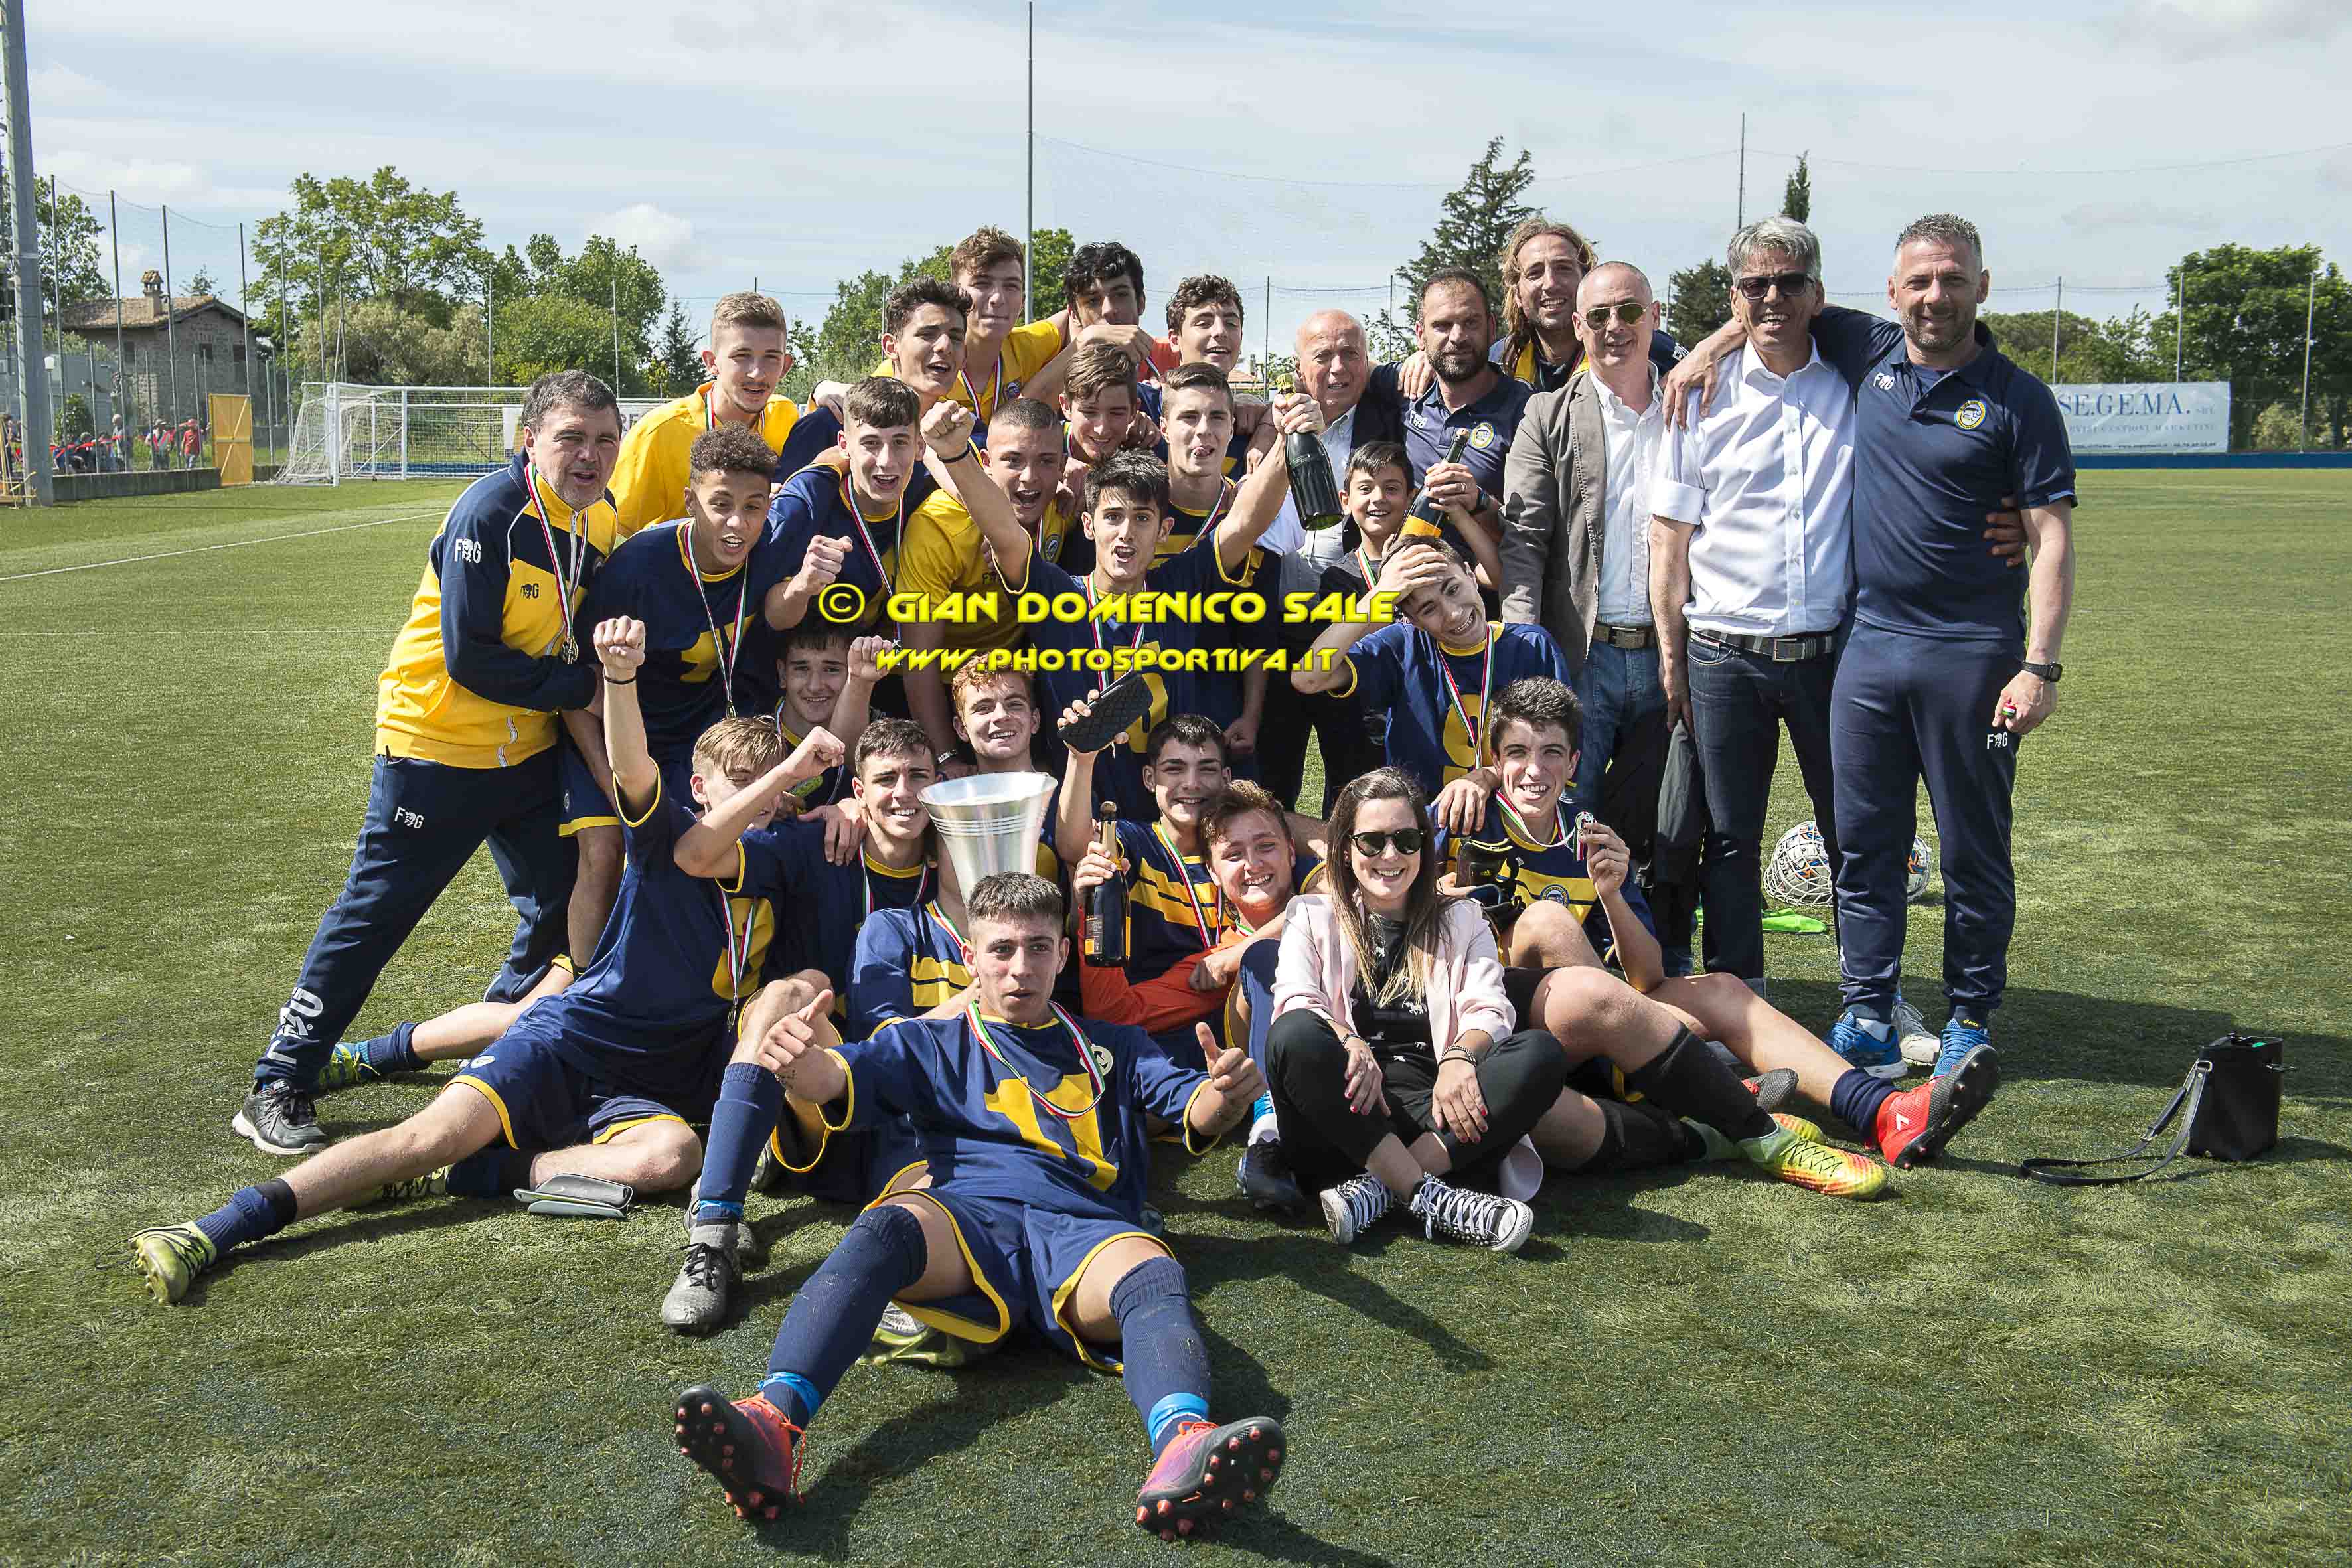 GIOVANISSIMI ELITE | Accademia calcio Roma – Urbetevere 0-2, la cronaca